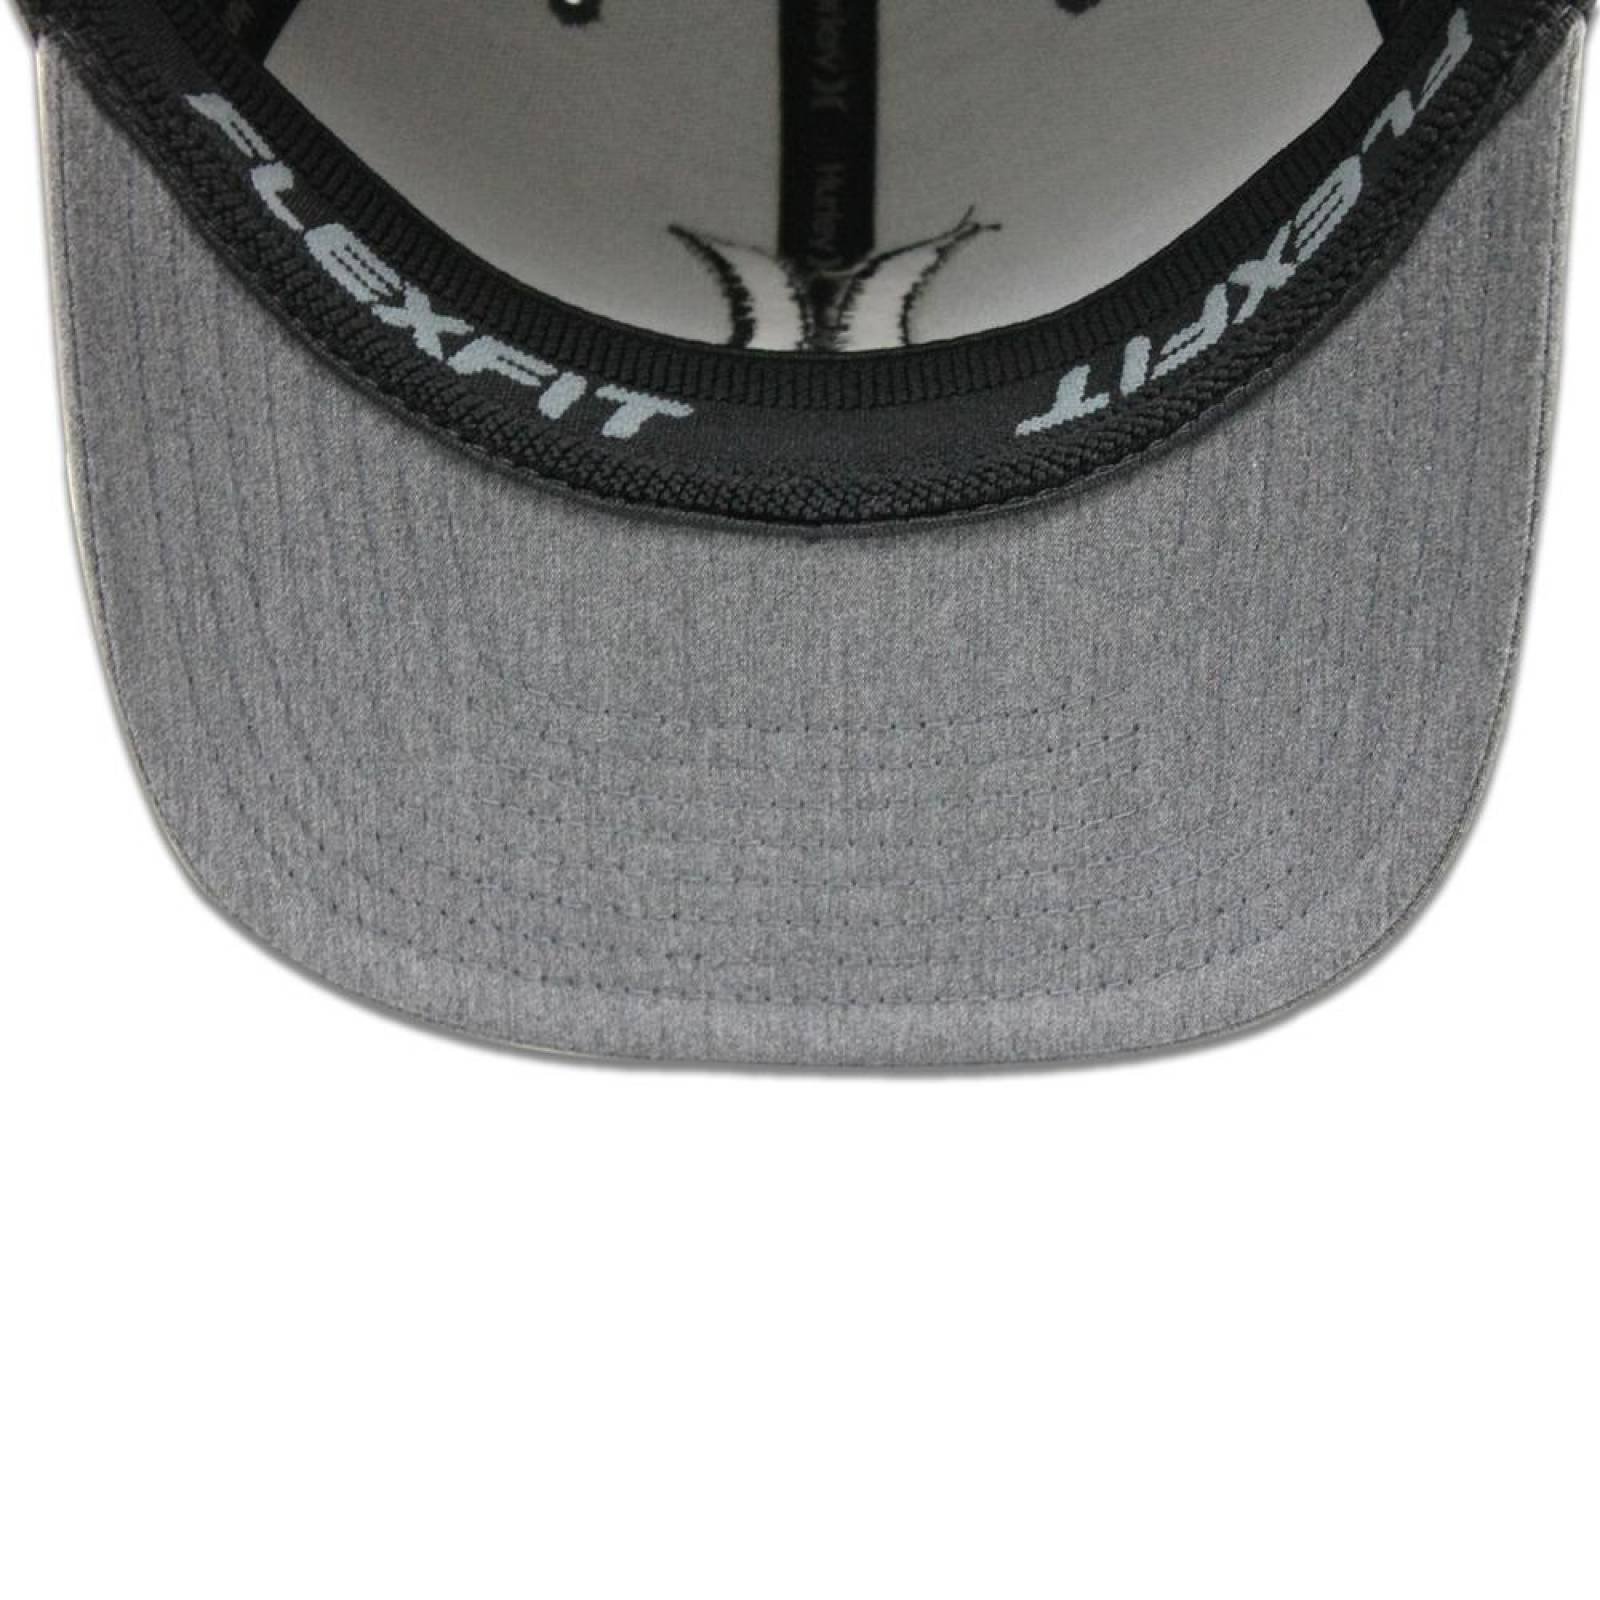 Gorra Hurley Flex Fit Textures Hat Gris 